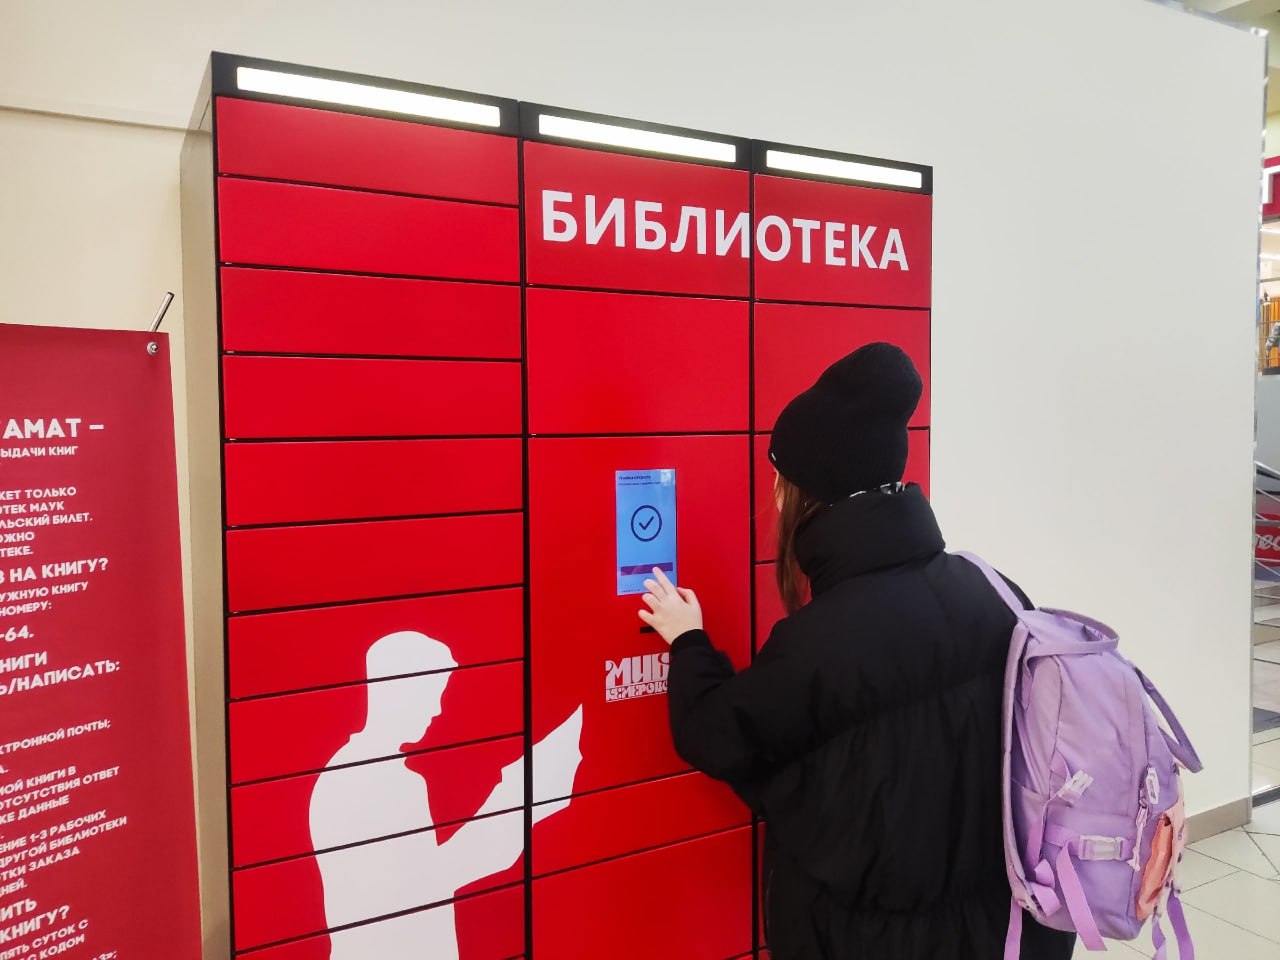 В Кемерове автомат в ТЦ выдал более 6 тысяч библиотечных книг